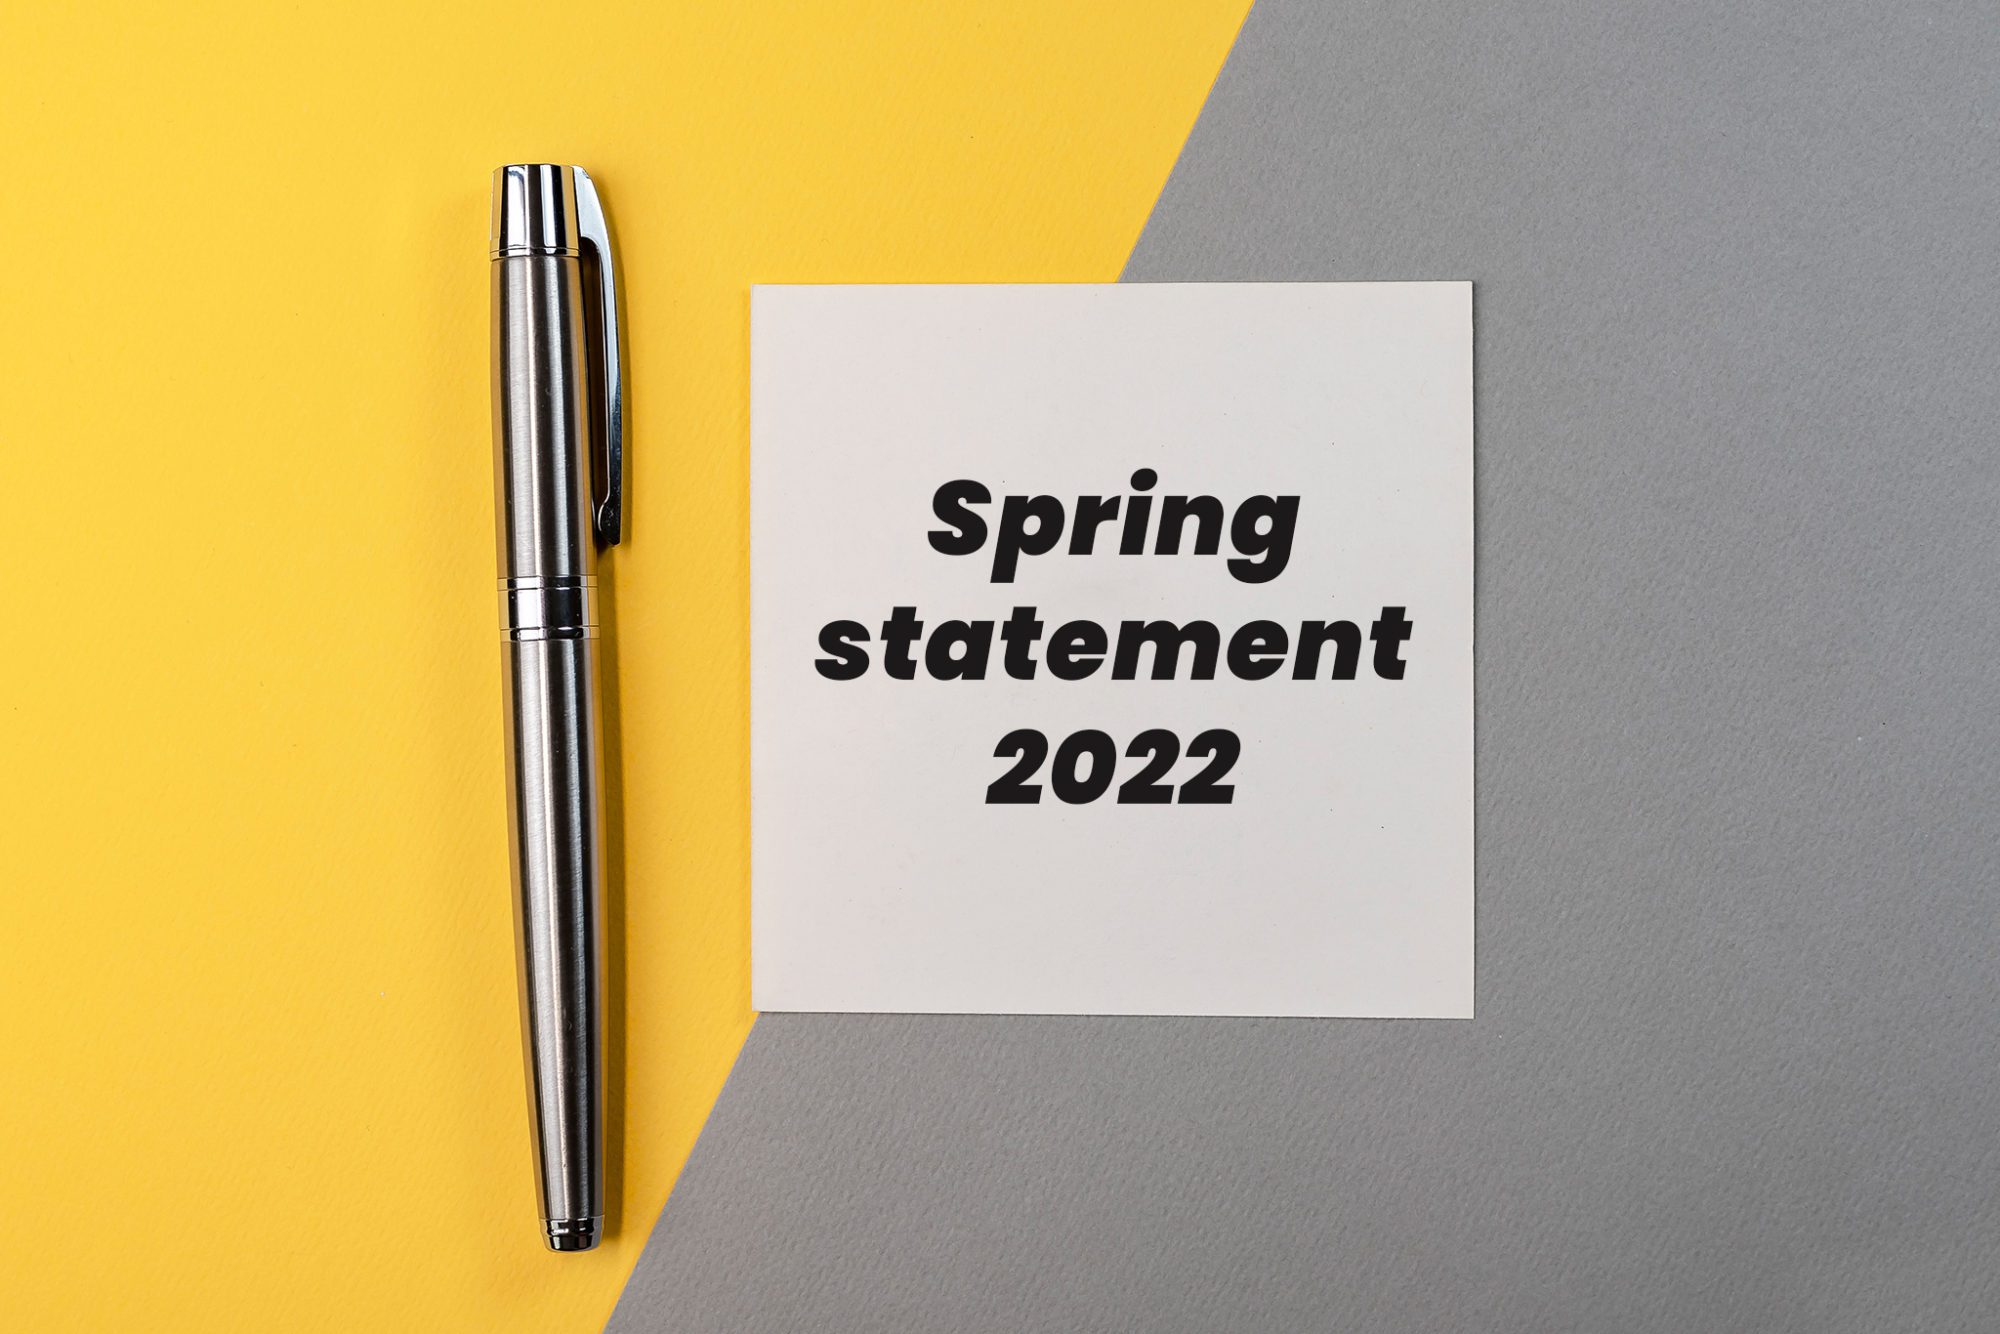 Spring statement 2022